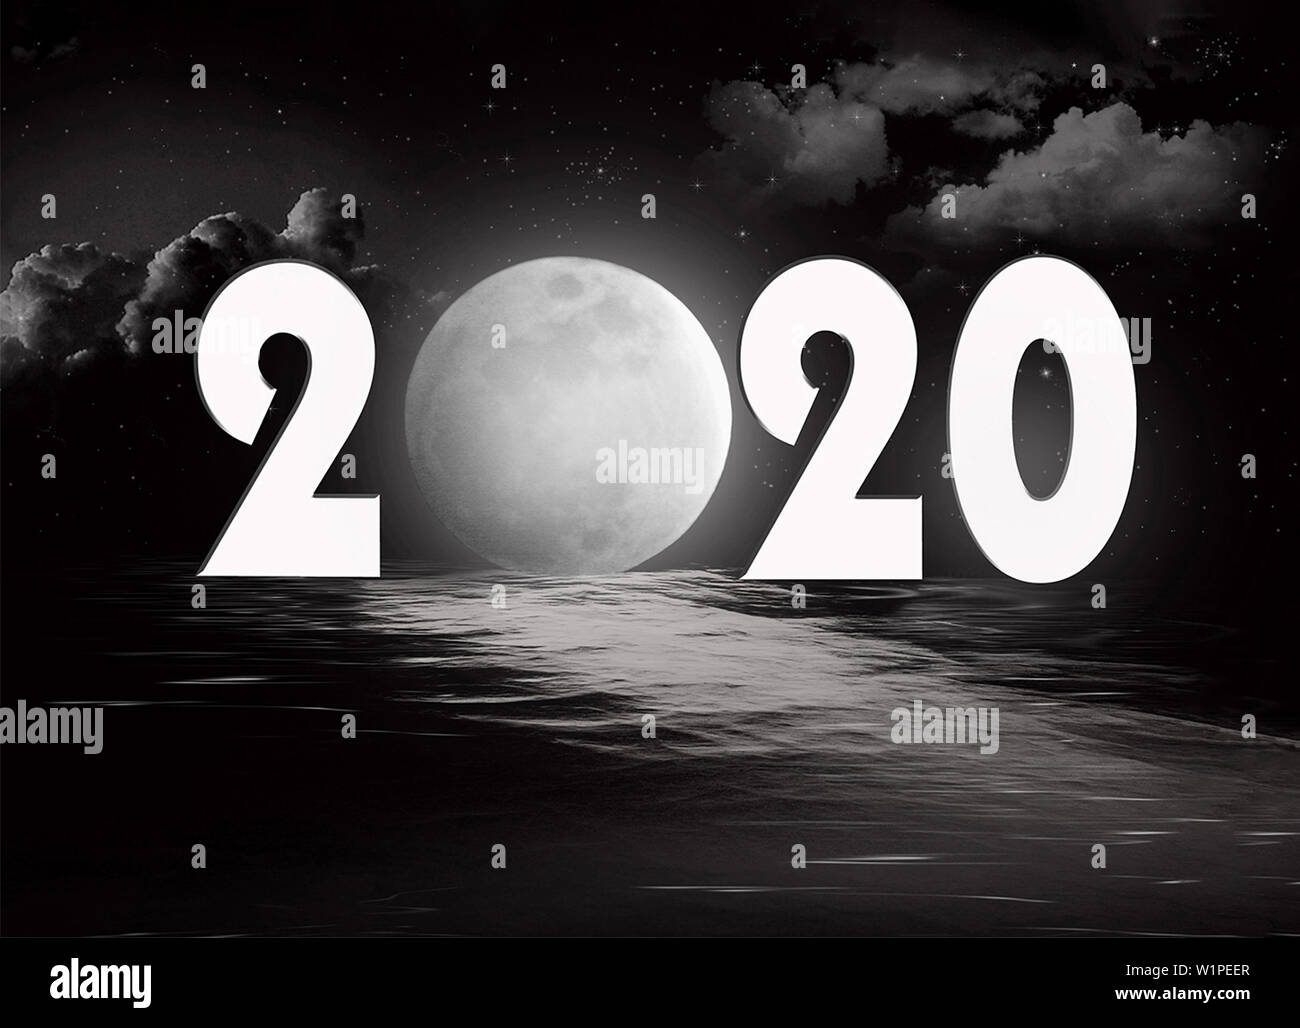 Nouvelle année 2020 la réflexion de l'eau avec la pleine lune et la réflexion de l'eau noire Banque D'Images